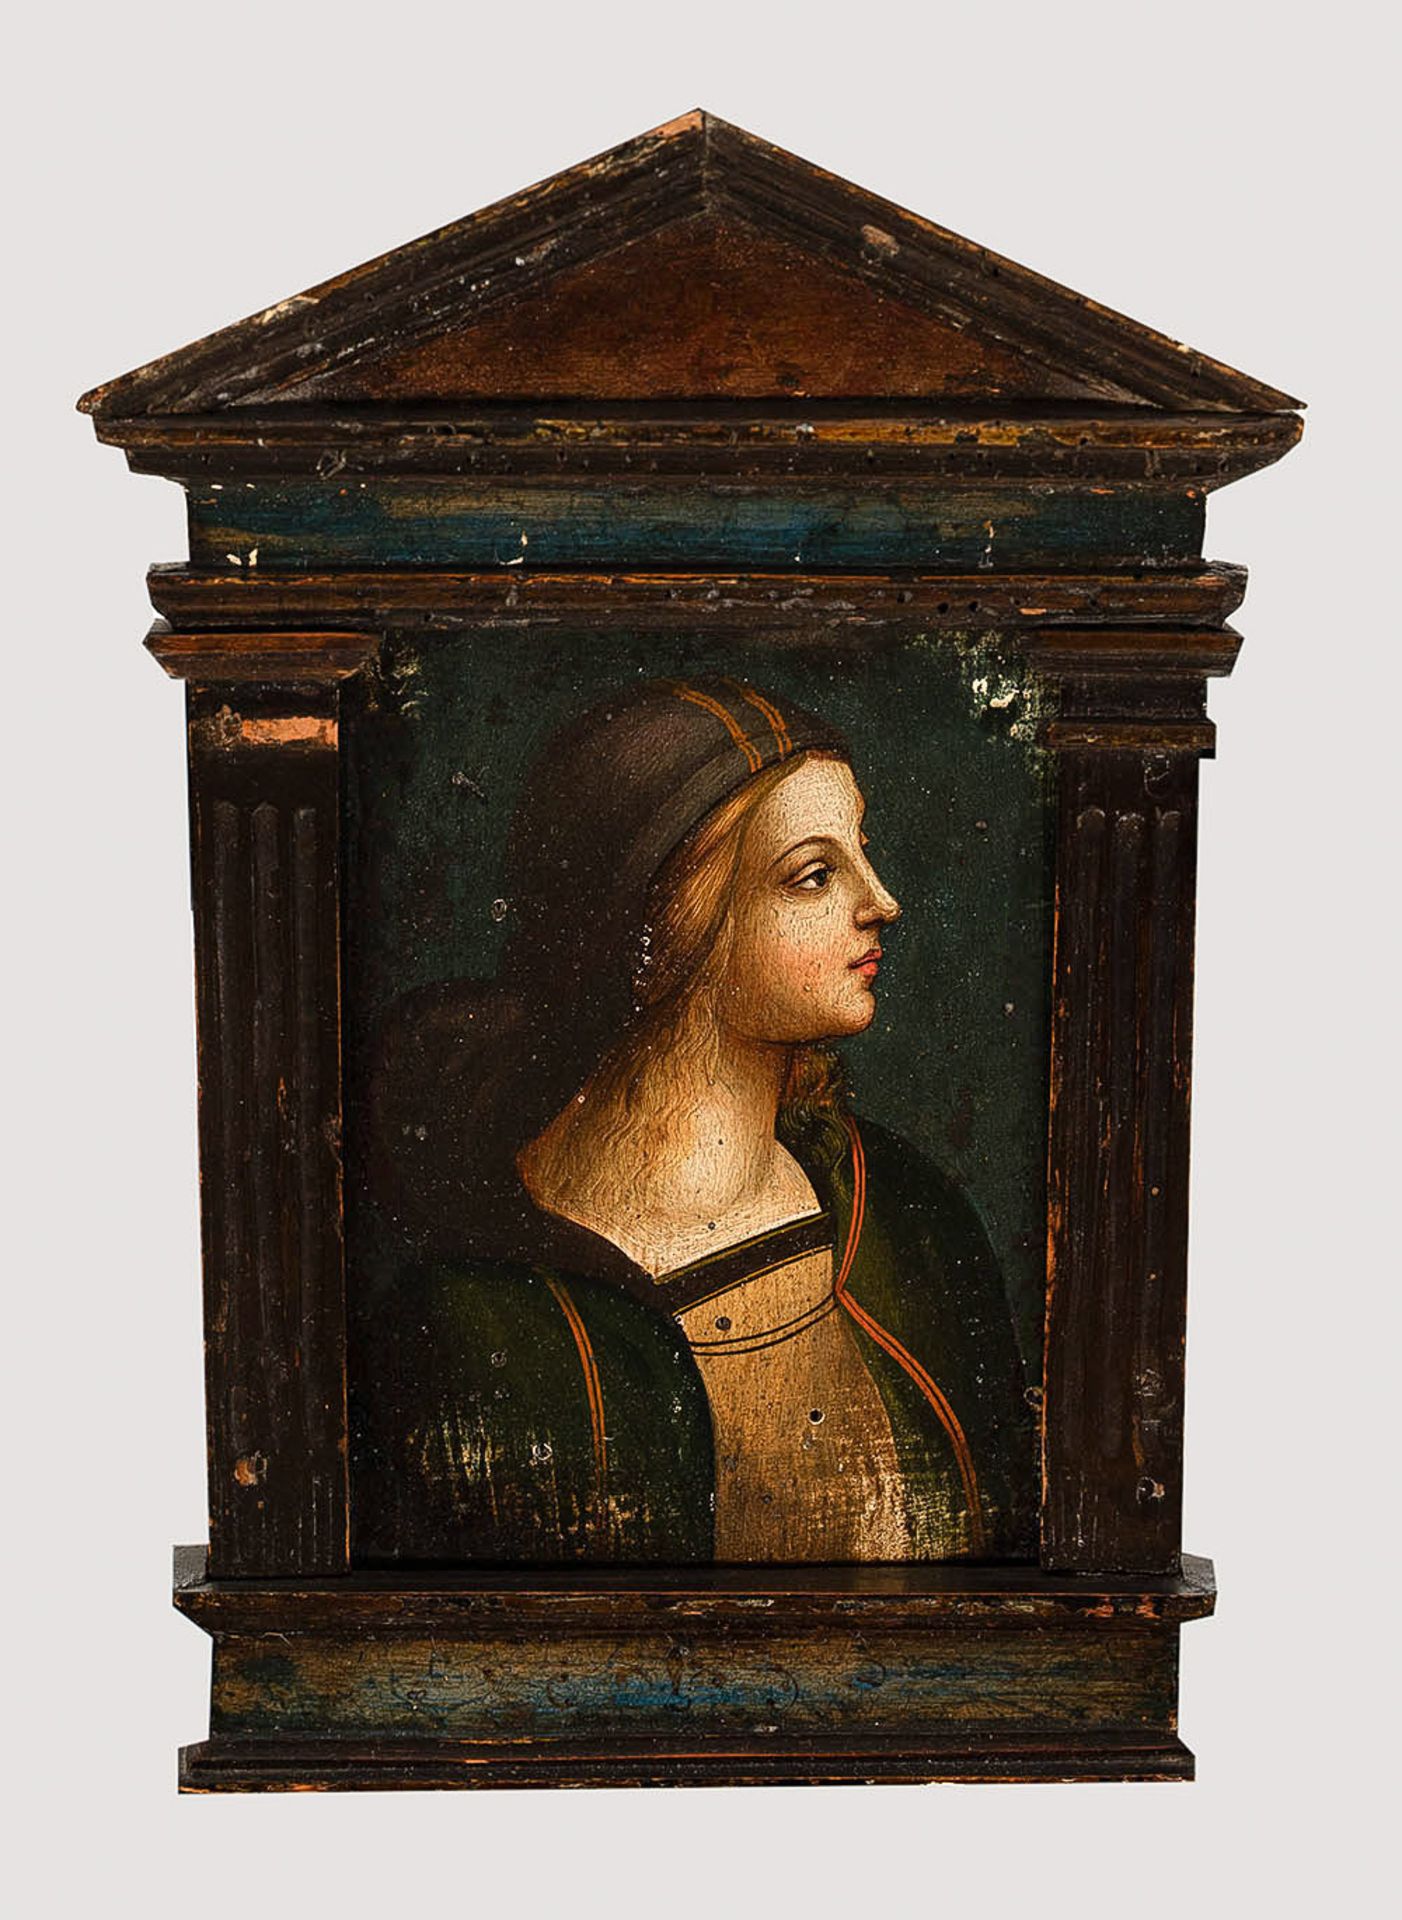 North Italian Artist 16. century